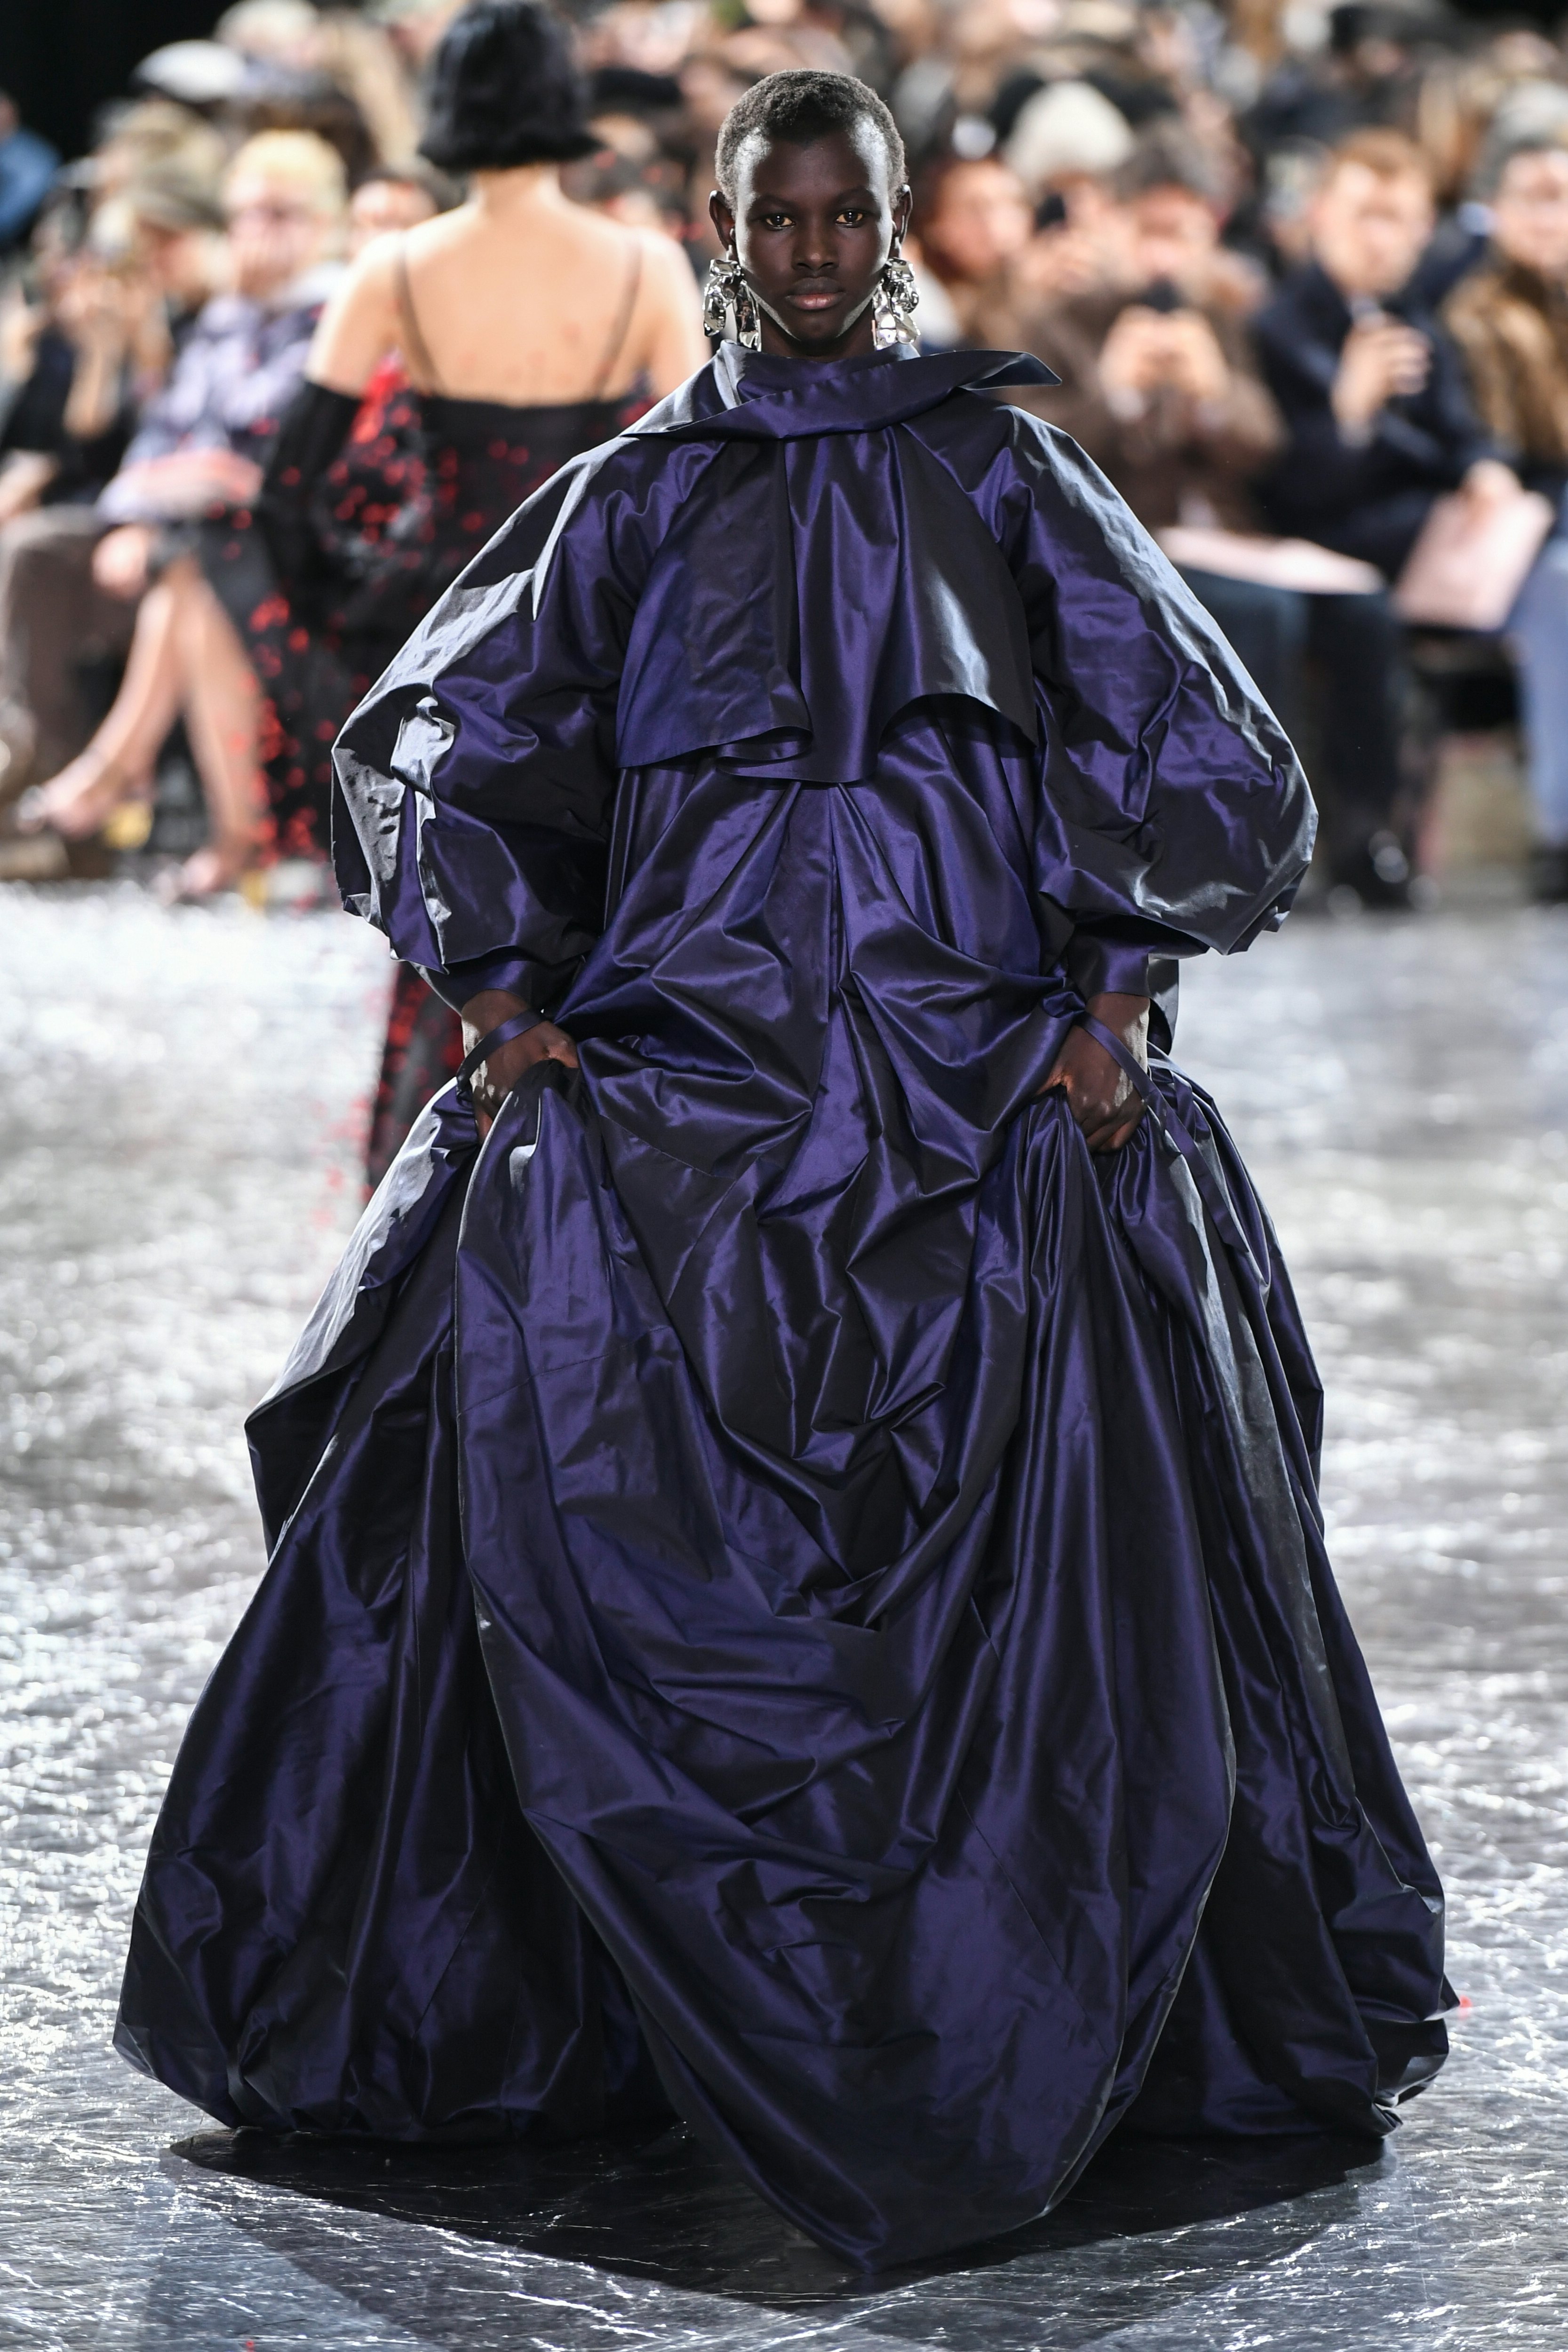 Jean Paul Gaultier's Paris Couture Show Was a Simone Rocha Celebration